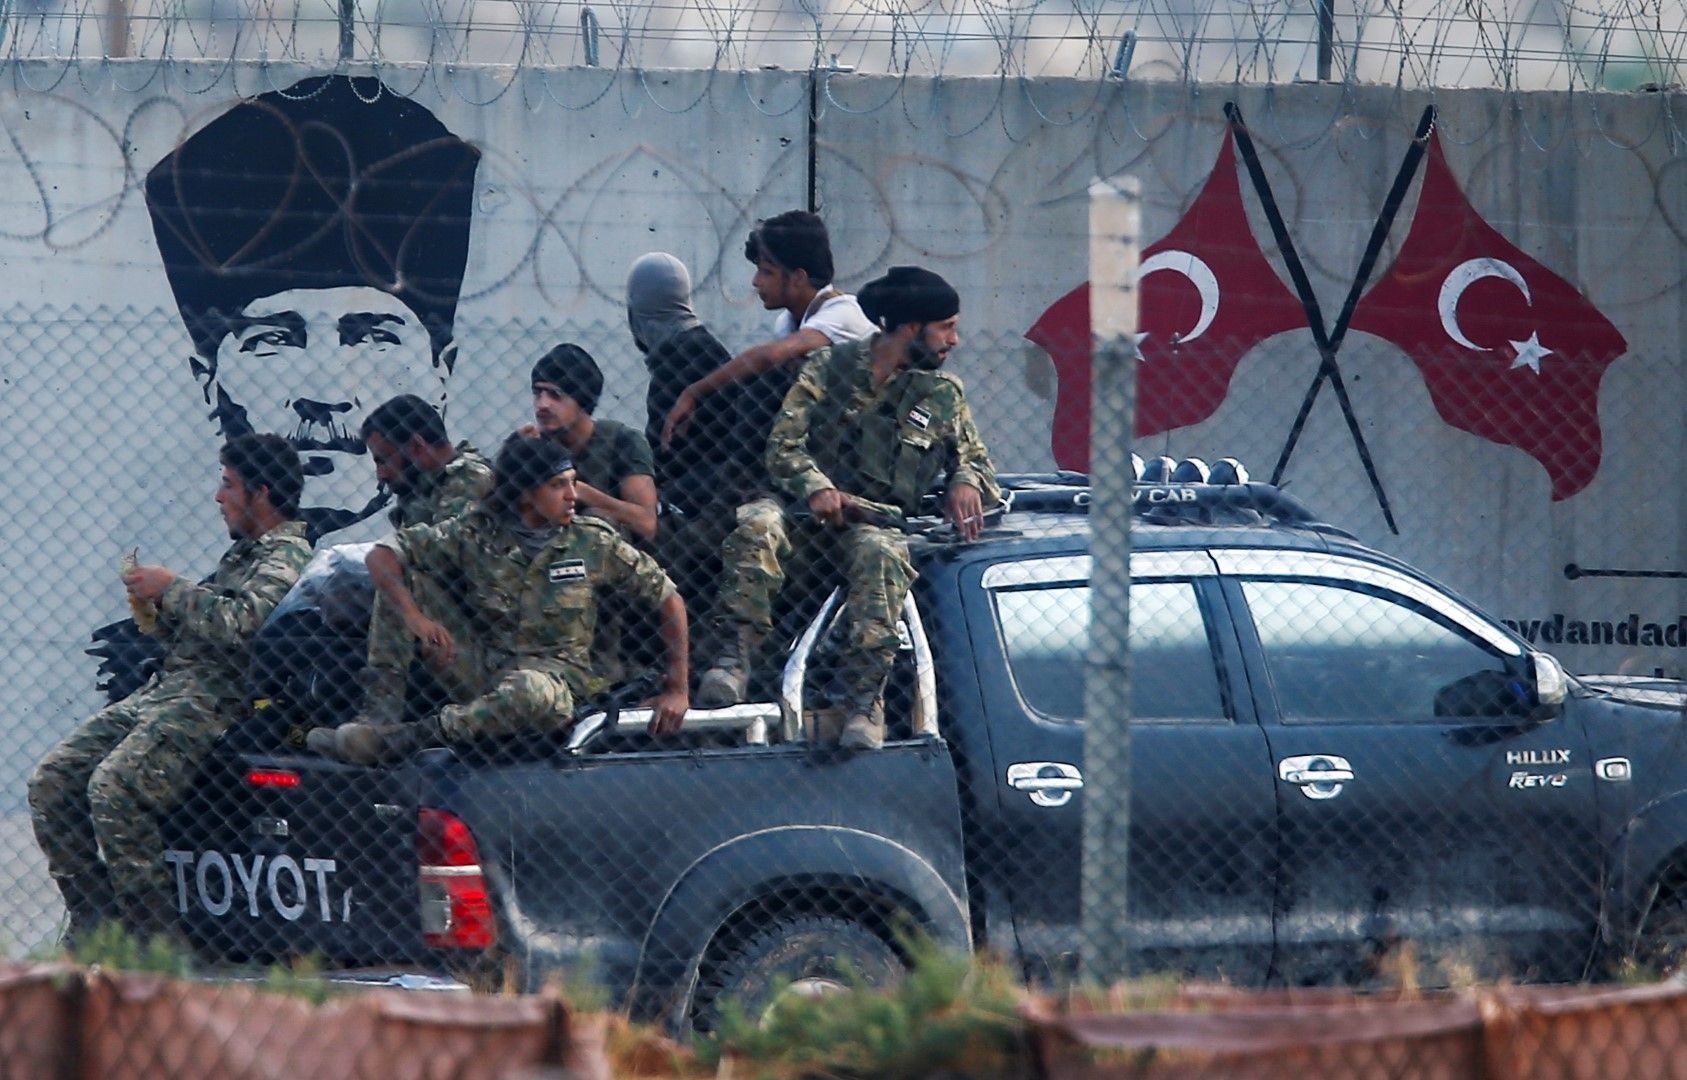 Сирийски бунтовници, които подкрепят турската армия, навлизат в Сирия под погледа на основателя на съвременна Турция Кемал Ататюрк